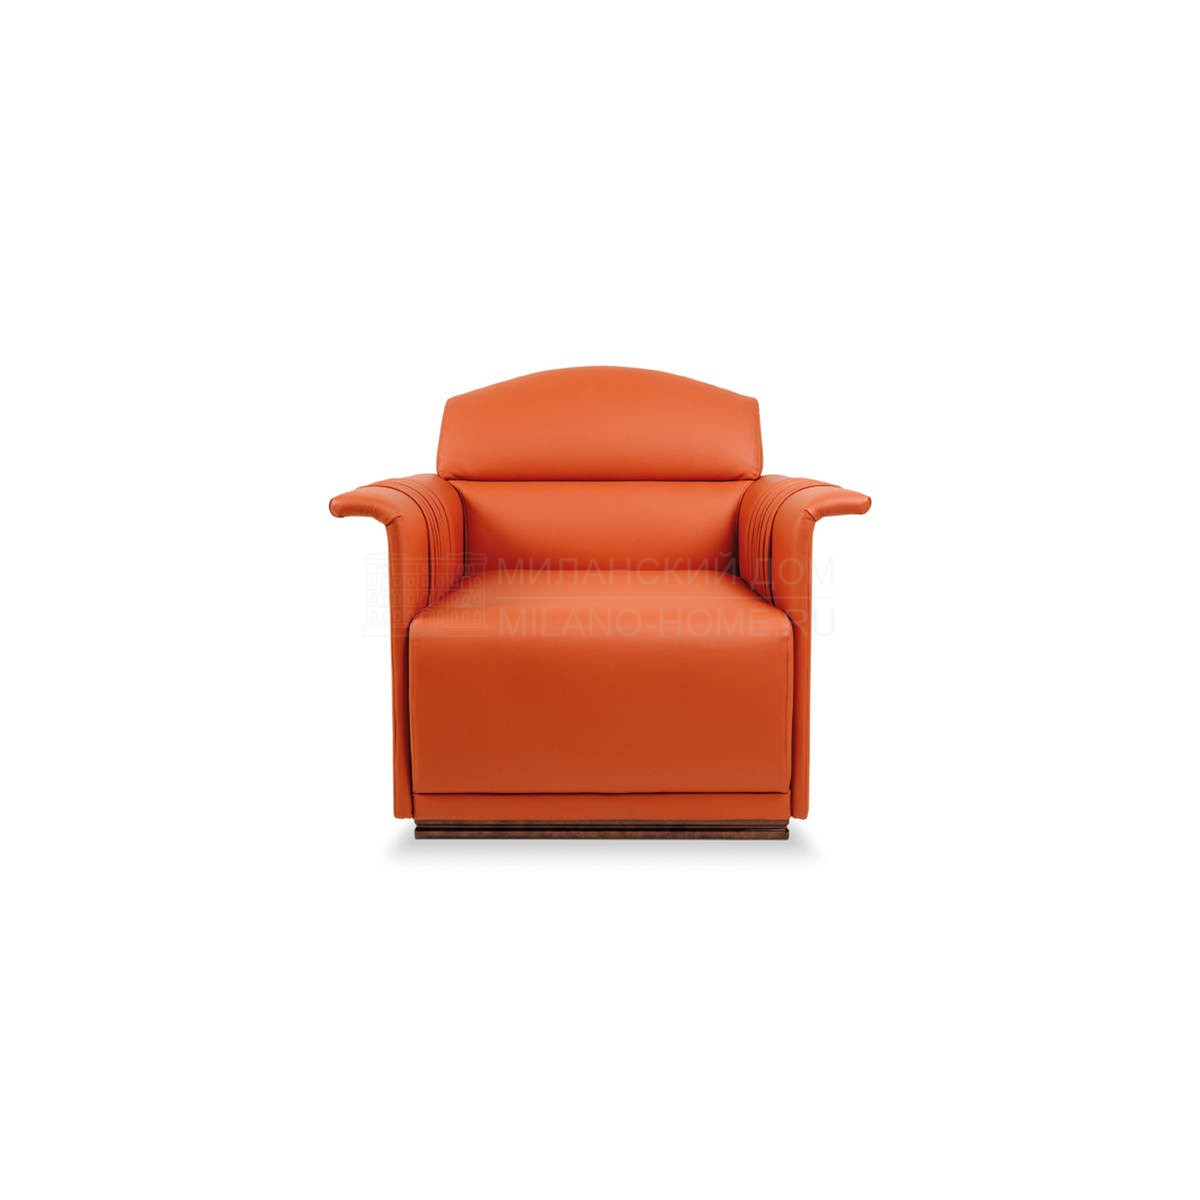 Кожаное кресло Madison armchair из Италии фабрики TURRI